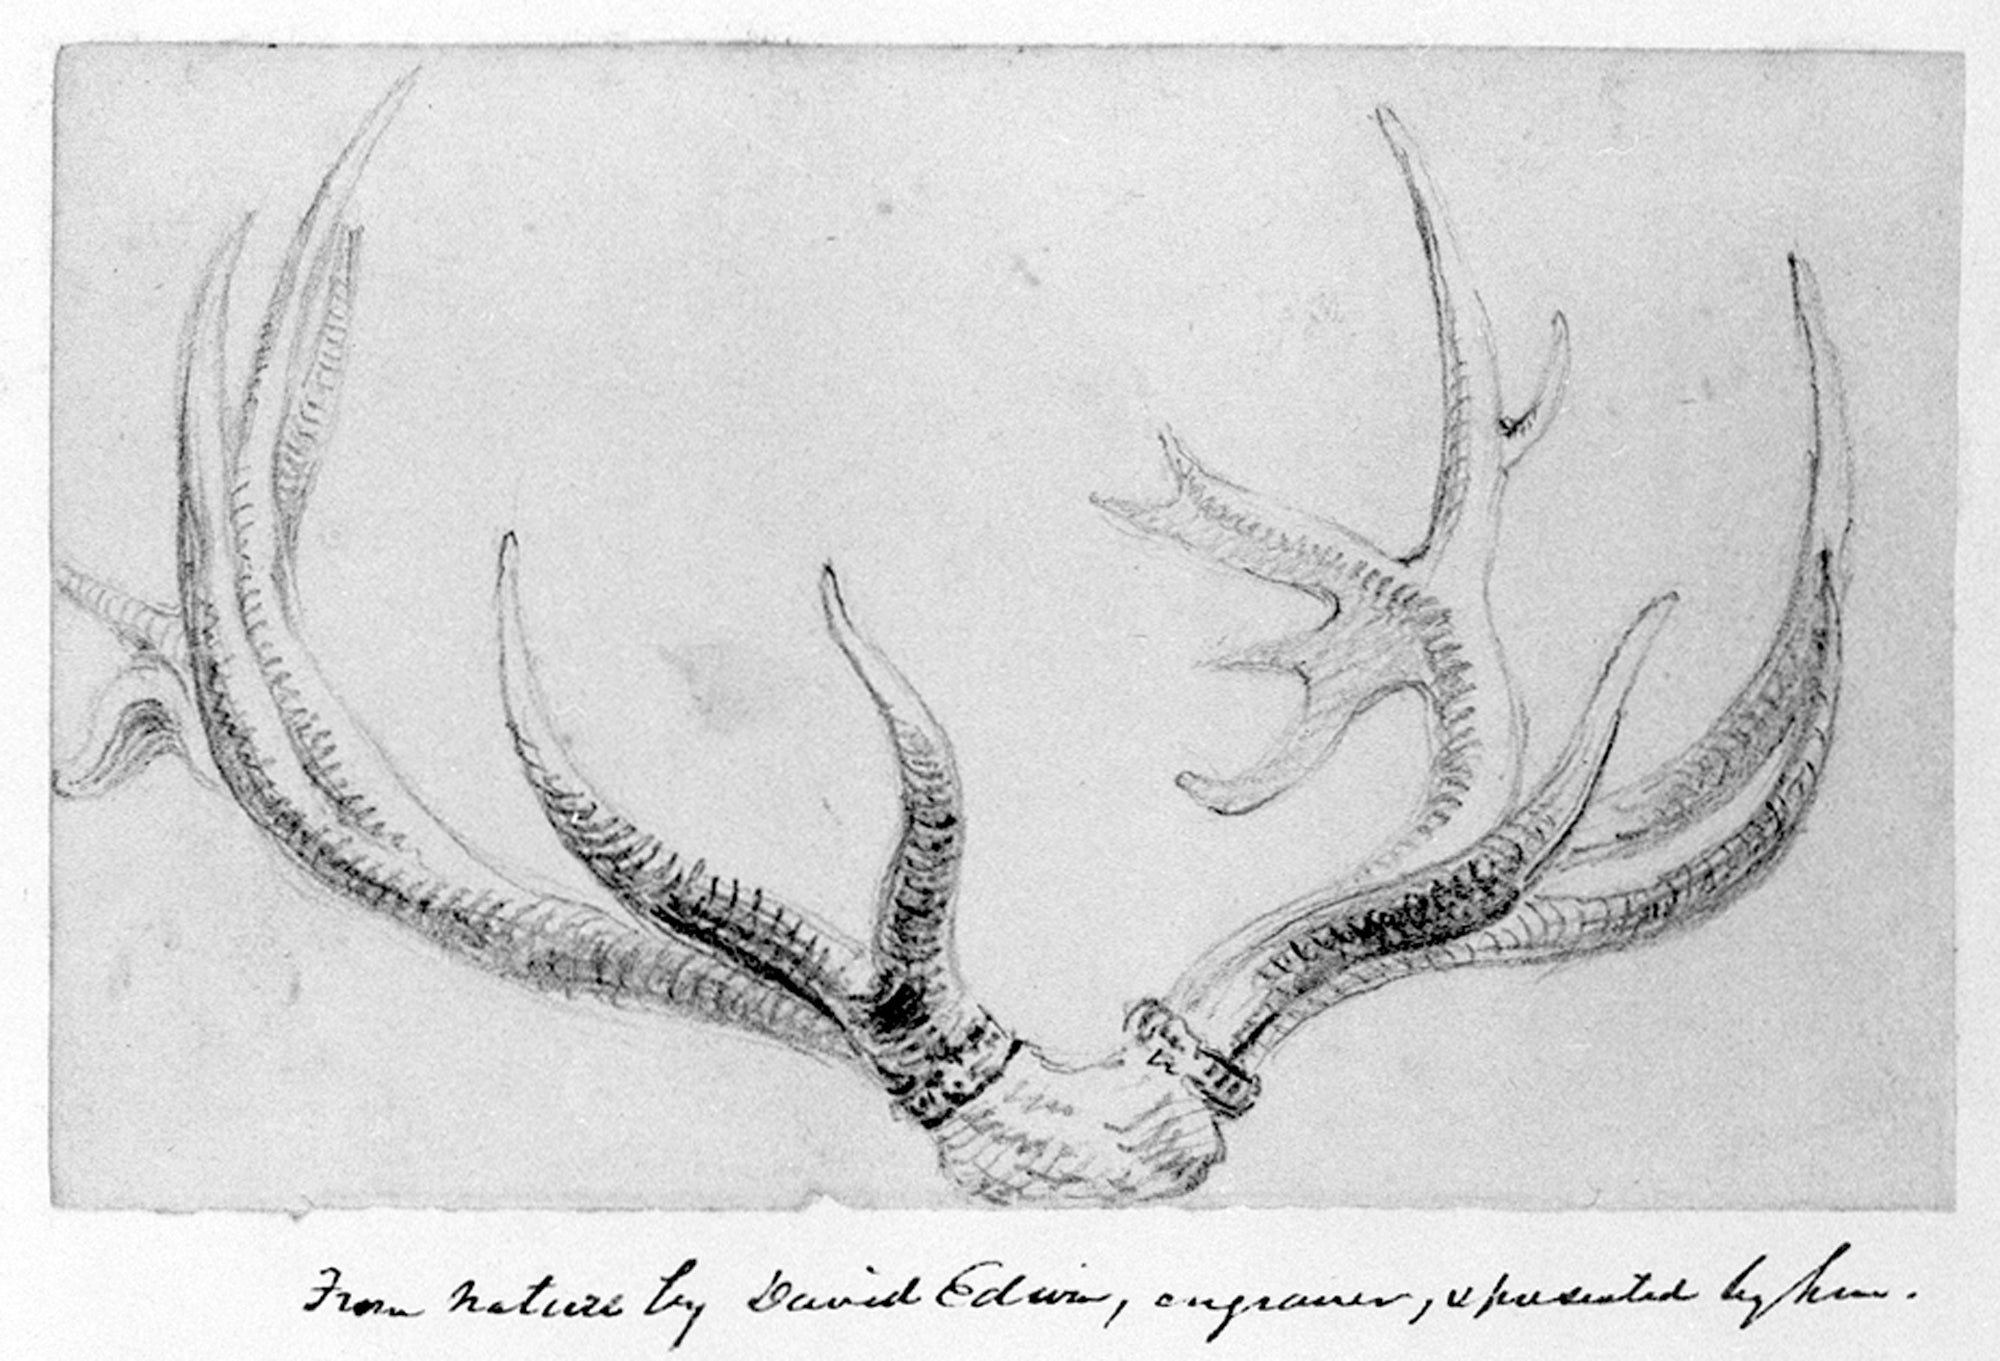 Sketch of deer antlers